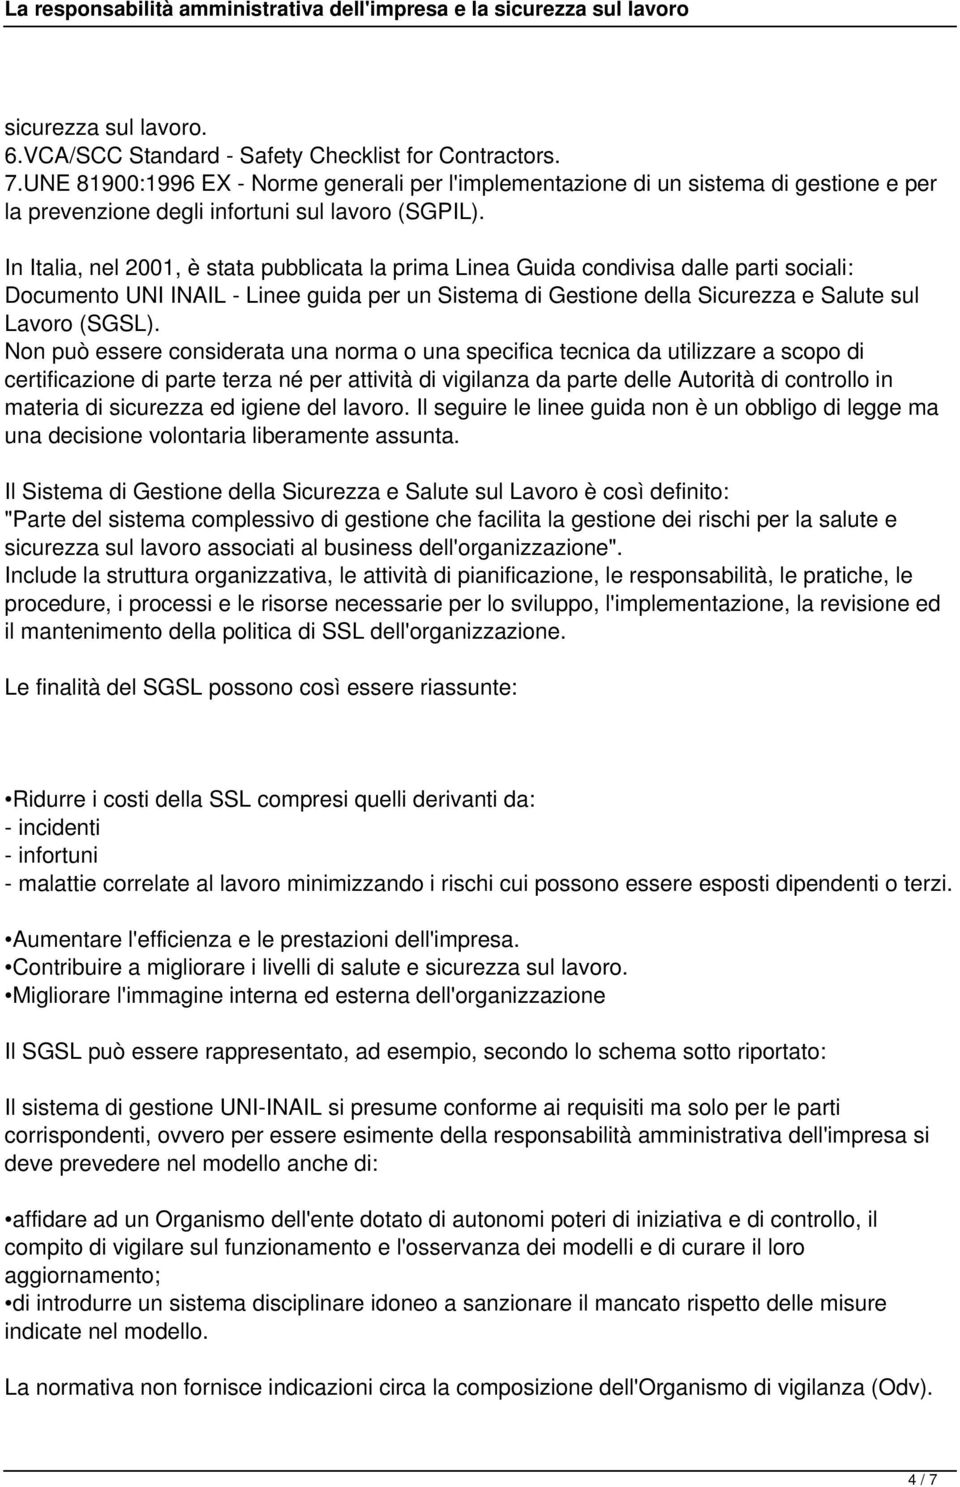 In Italia, nel 2001, è stata pubblicata la prima Linea Guida condivisa dalle parti sociali: Documento UNI INAIL - Linee guida per un Sistema di Gestione della Sicurezza e Salute sul Lavoro (SGSL).